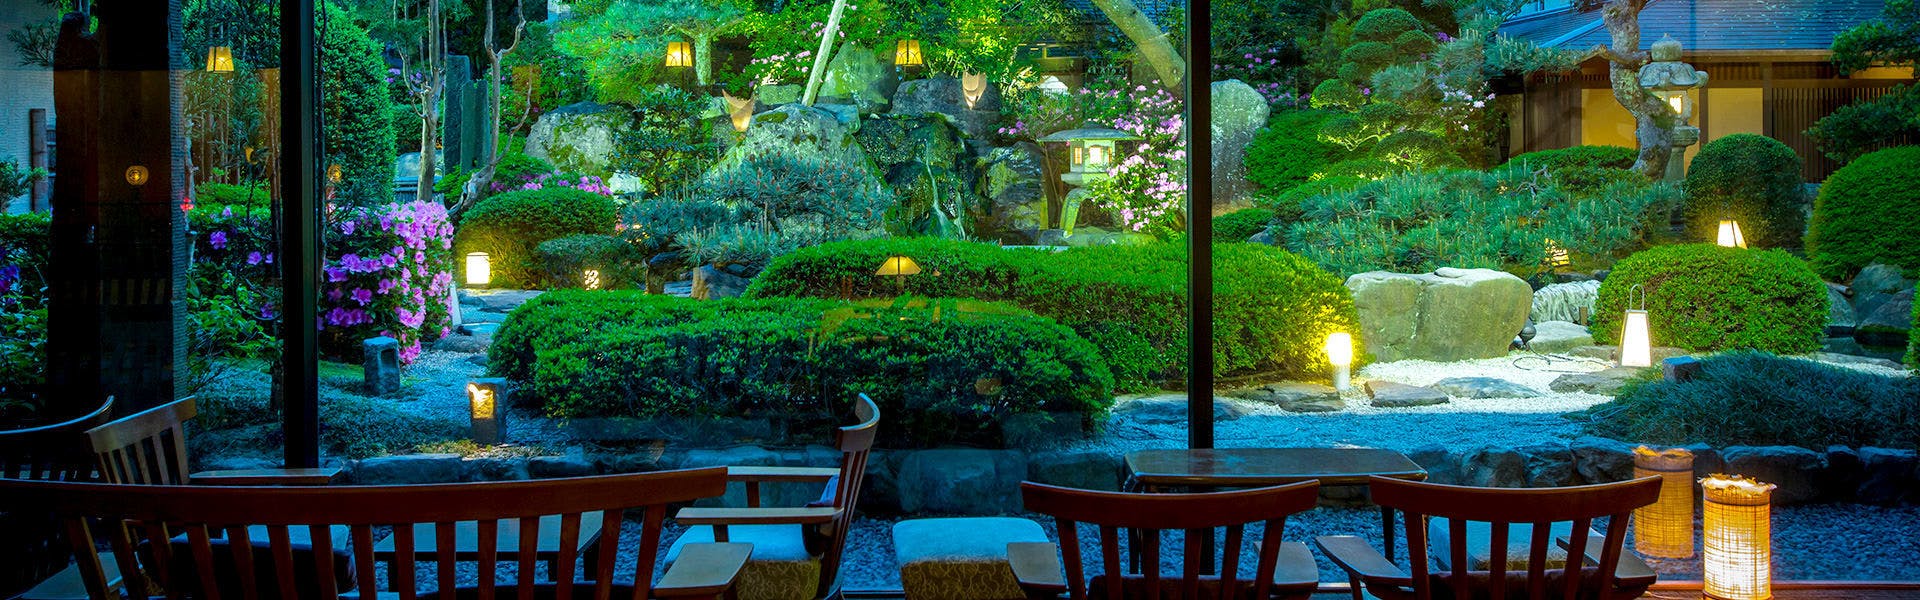 記念日におすすめのホテル・気兼ねなく、心地よく あわら温泉ホテル八木の写真1